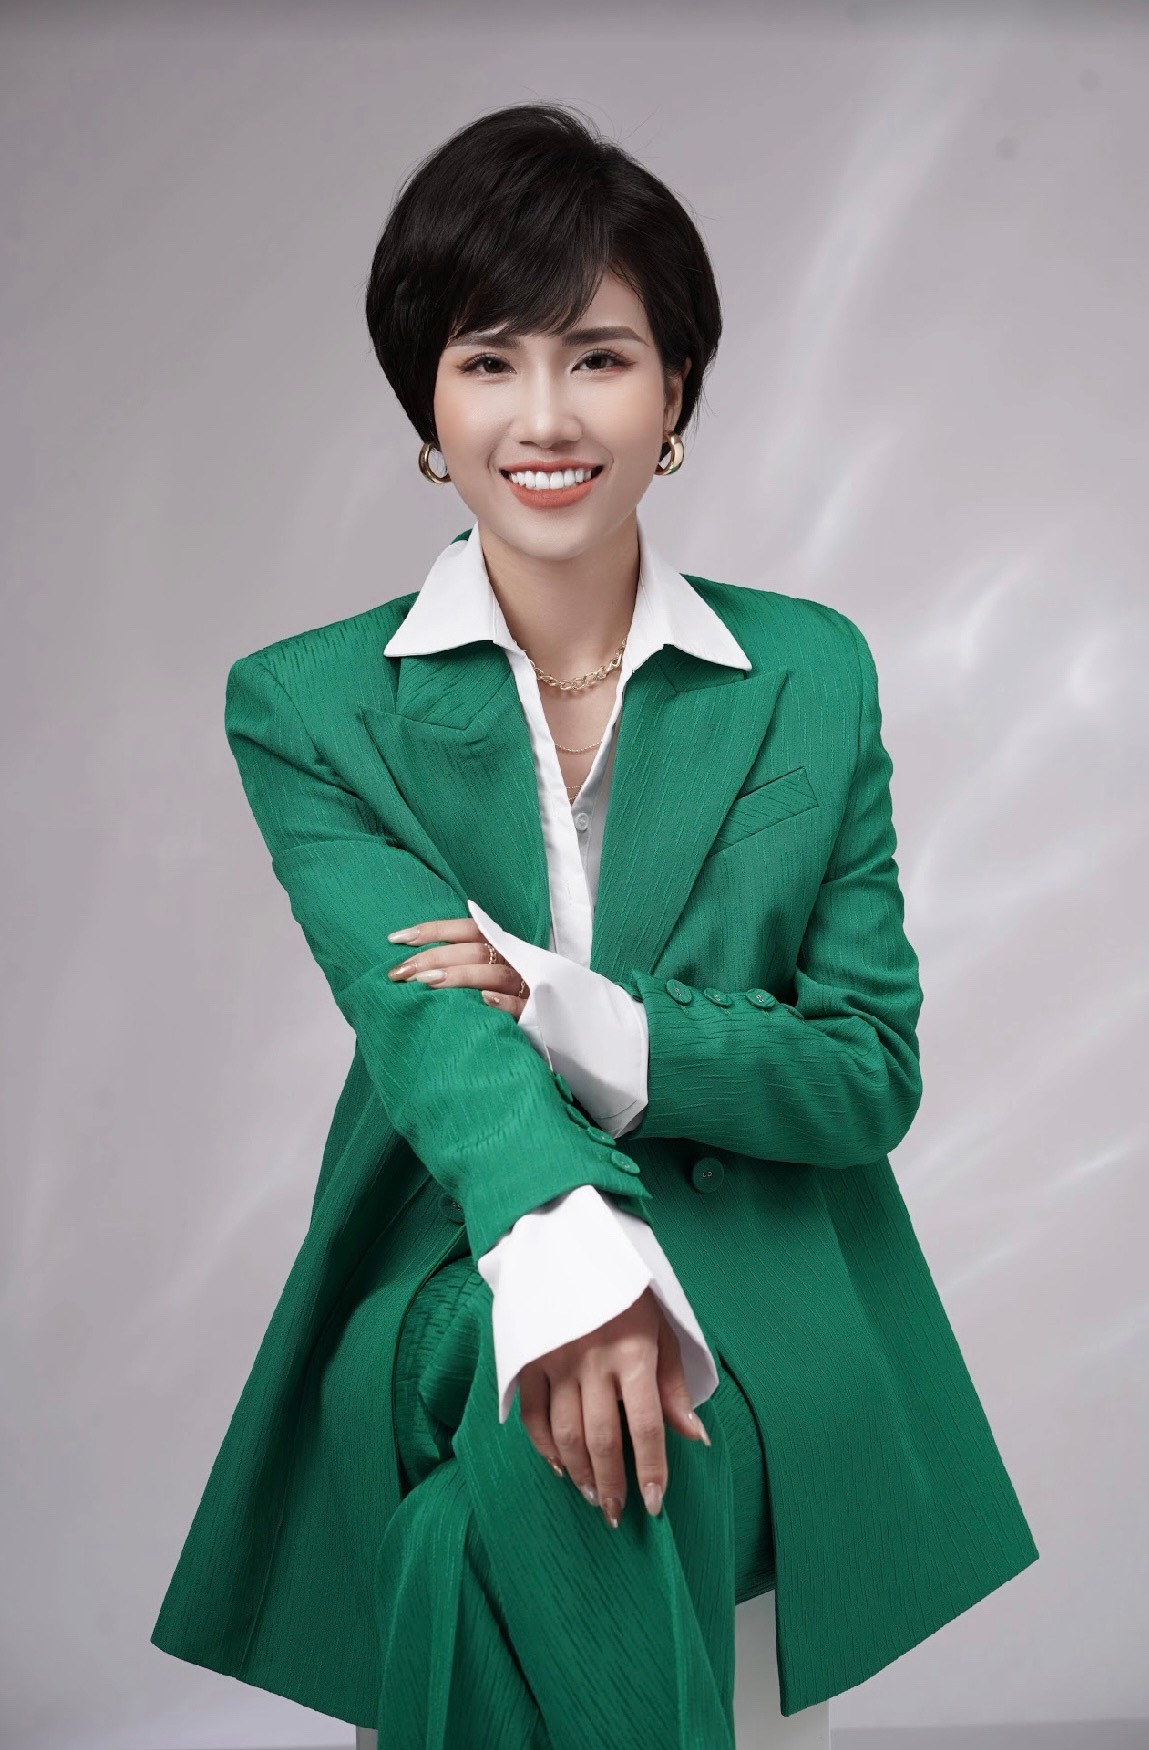 Quỳnh Trang: Quý cô mê diện vest, thích sưu tầm đồng hồ để rèn luyện kỉ luật  - Ảnh 3.